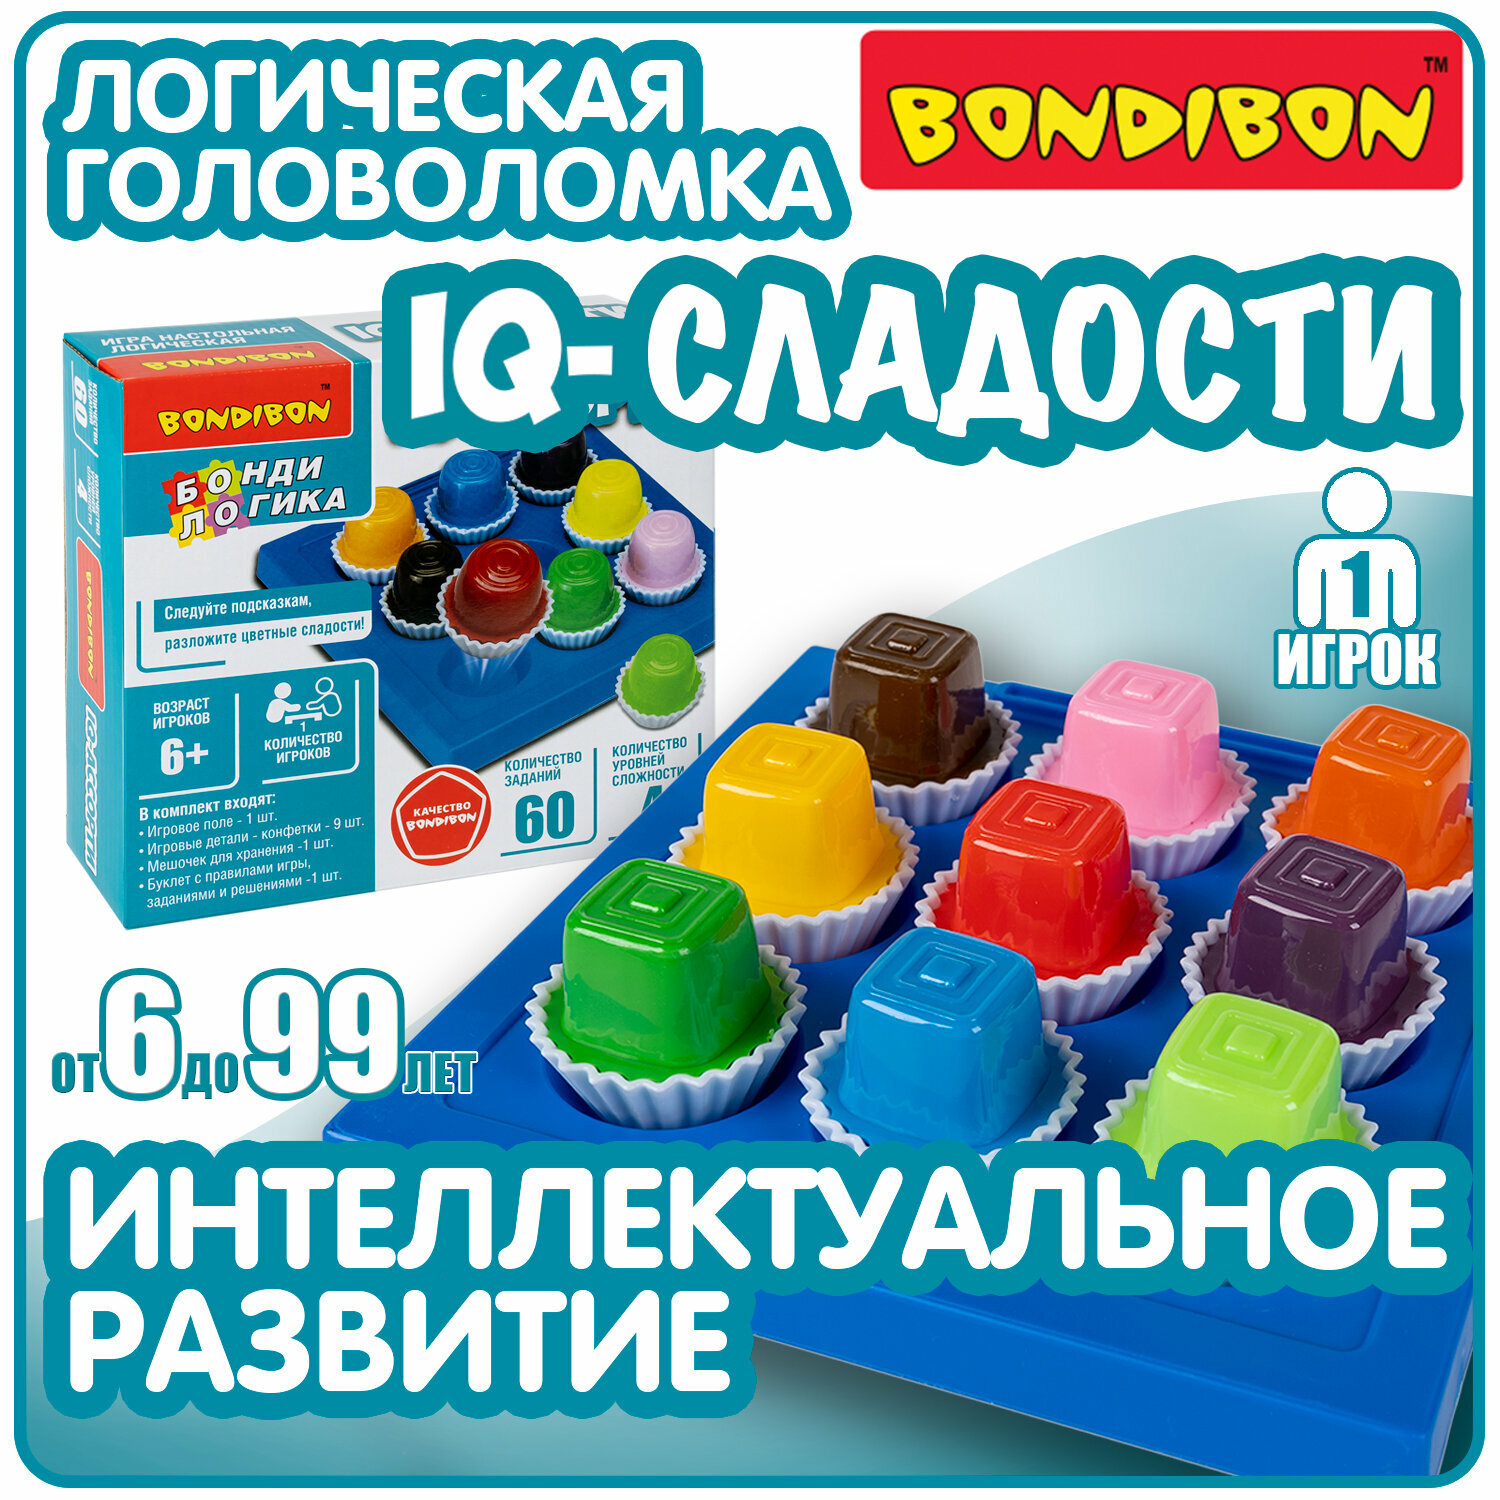 Игра настольная логическая БондиЛогика Bondibon "iq-ассорти", квадратные конфеты.